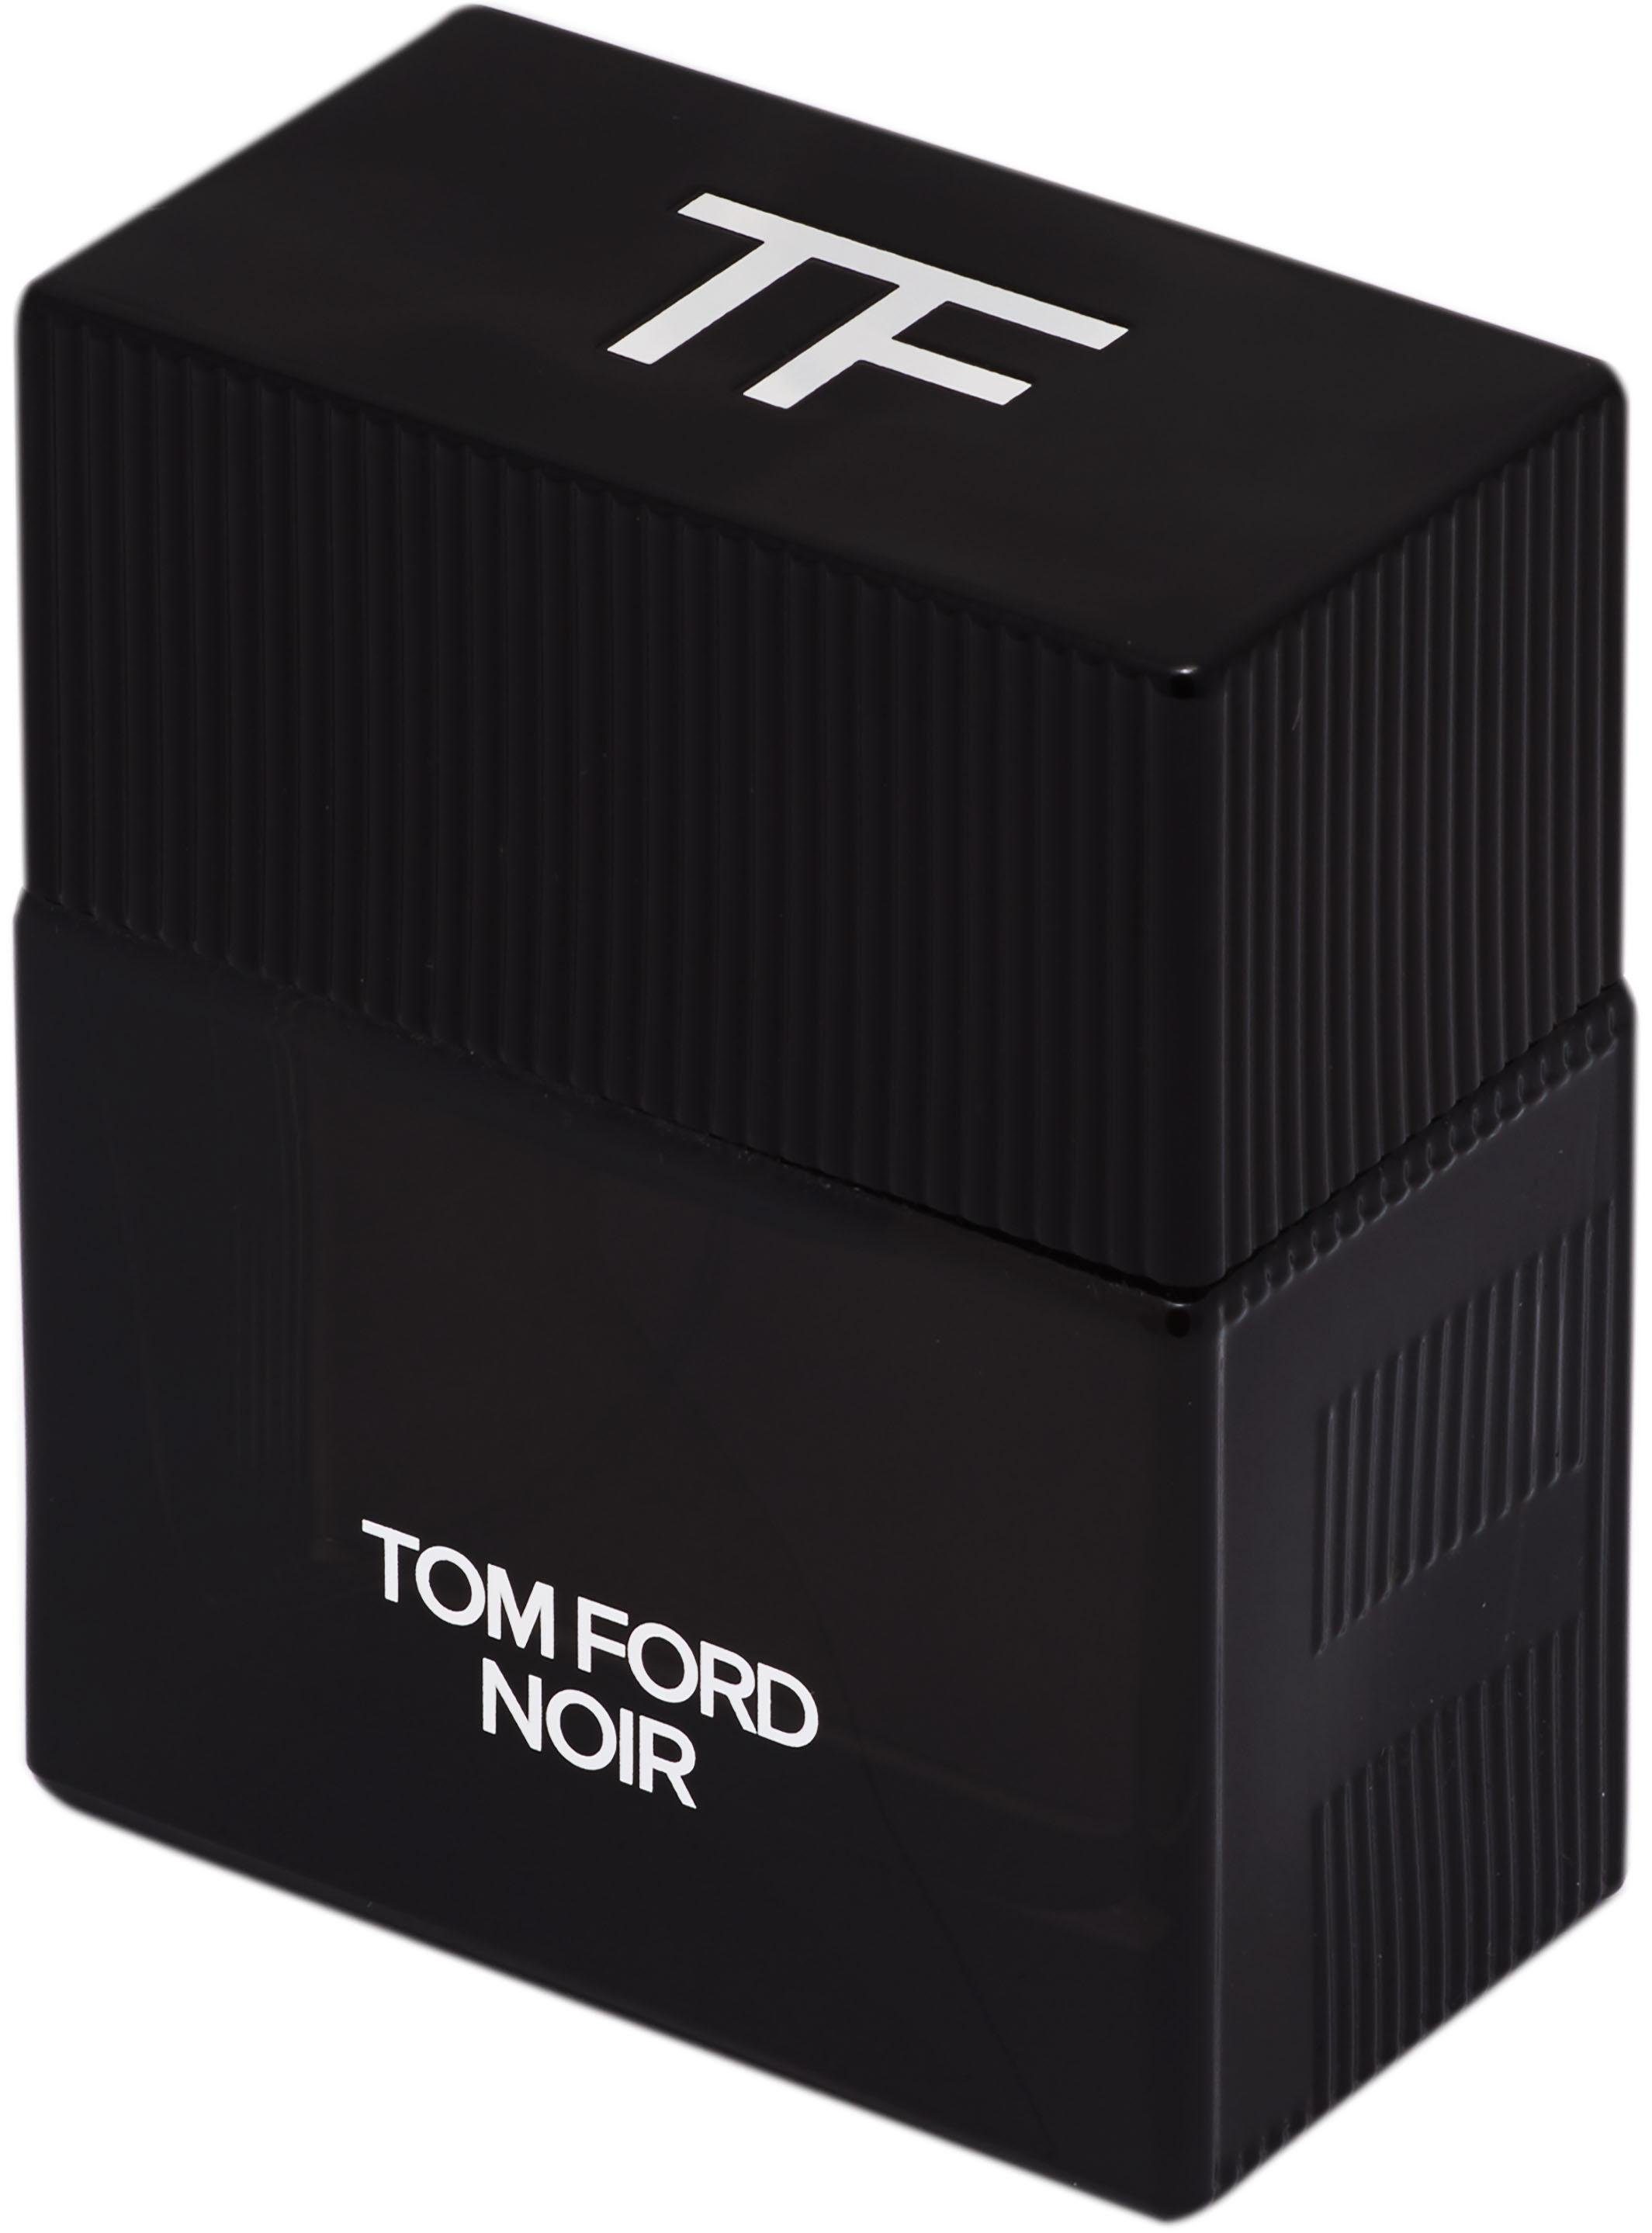 Tom Ford Eau de Parfum Noir online kaufen | OTTO